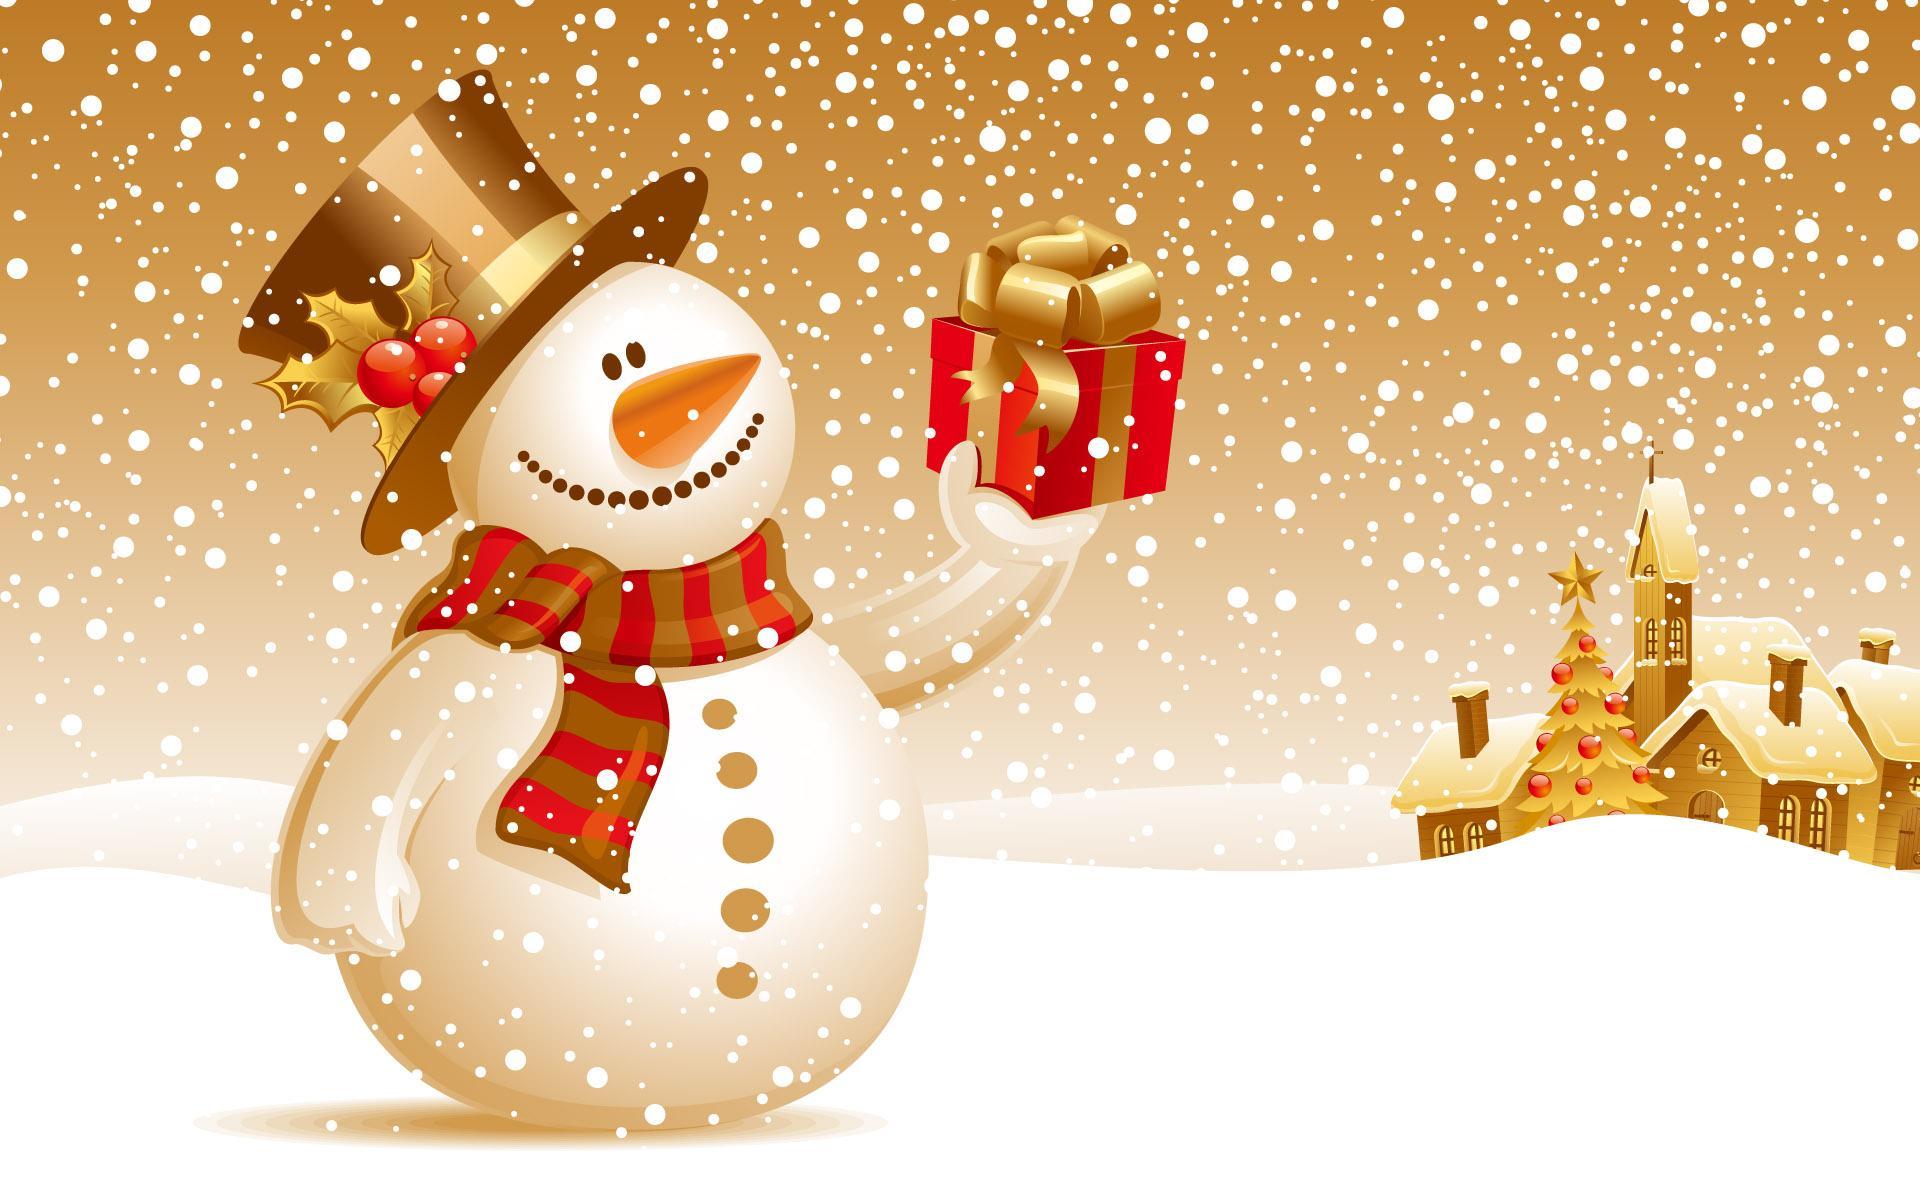 Скачать обои бесплатно Снеговики, Праздники, Рождество (Christmas Xmas), Новый Год (New Year), Рисунки картинка на рабочий стол ПК